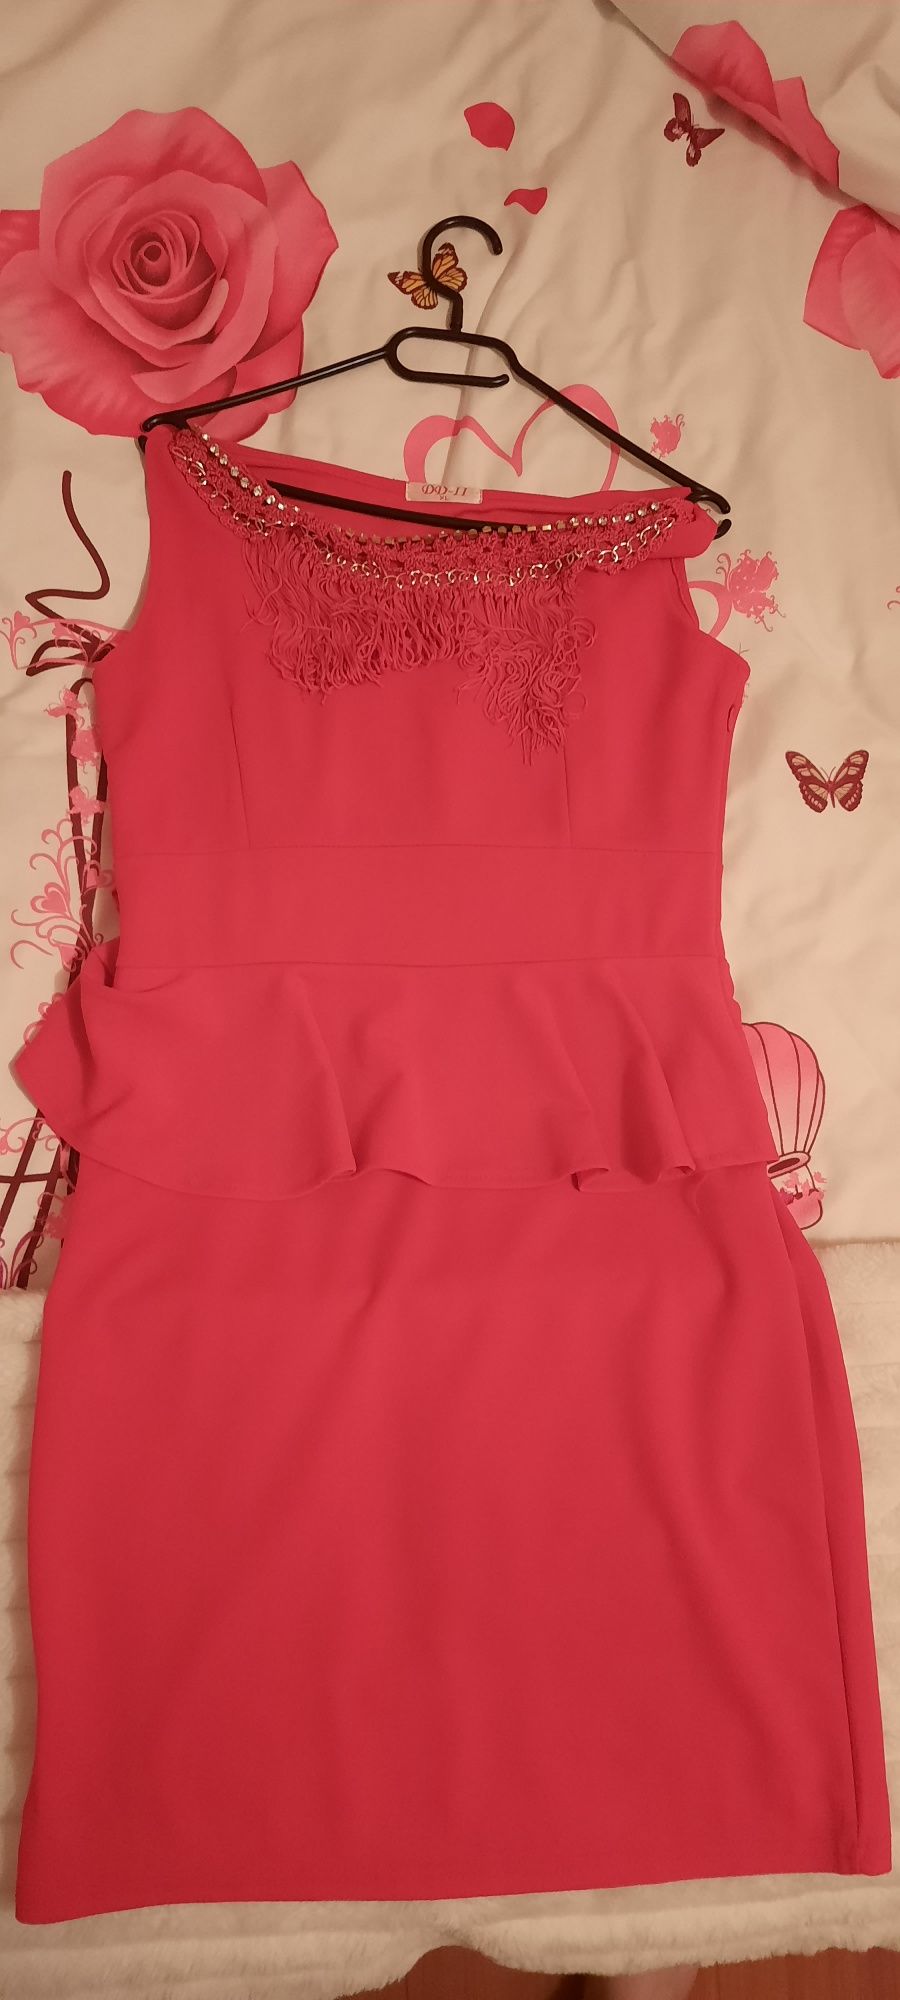 Rochie roșie damă mărimea XL